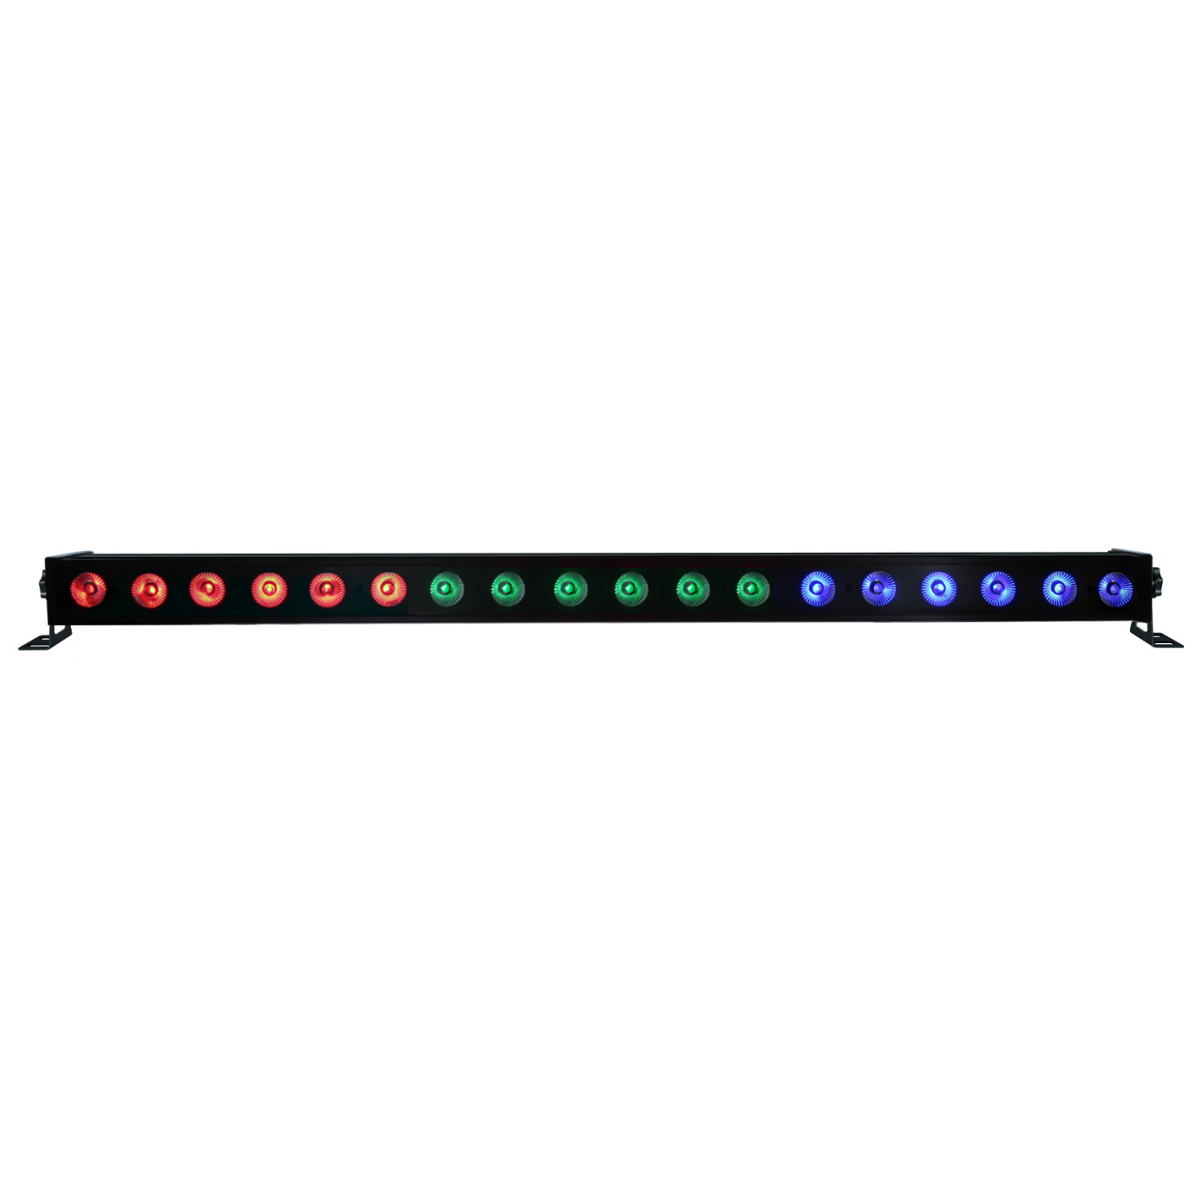 BARRE LED 18x3W RGB - Barre led RGB - Energyson